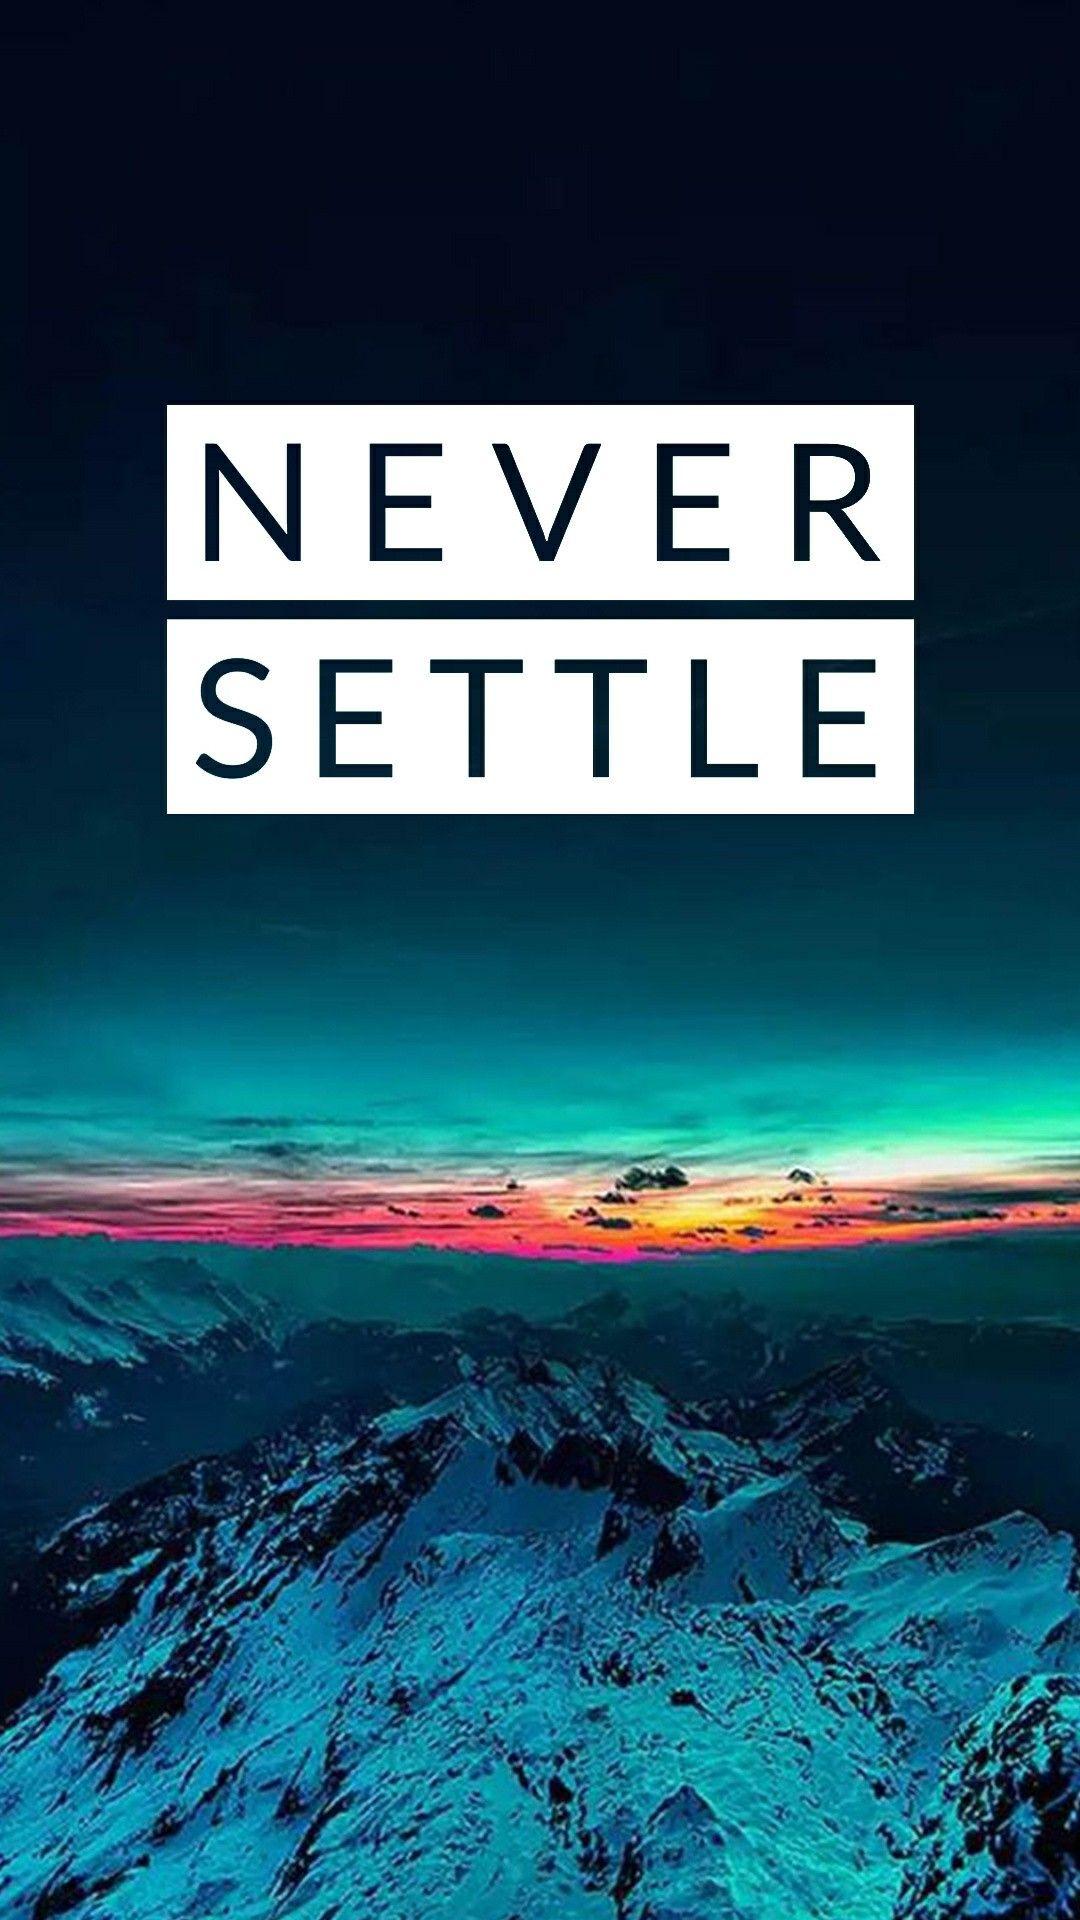 Never settle. Never settle wallpaper, Oneplus wallpaper, Black